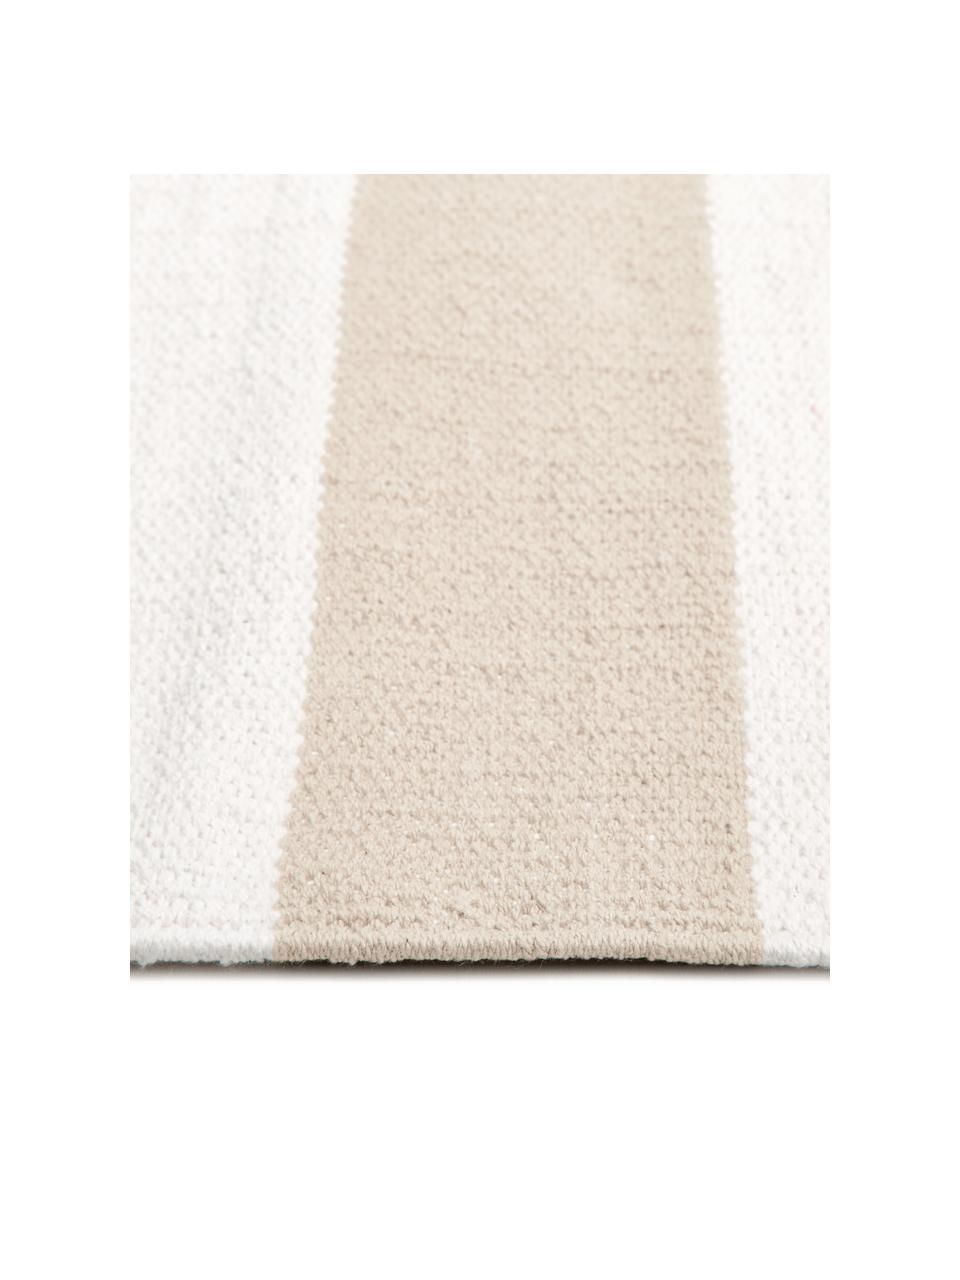 Gestreifter Baumwollteppich Blocker in Beige/Weiß, handgewebt, 100% Baumwolle, Cremeweiß/Beige, B 200 x L 300 cm (Größe L)